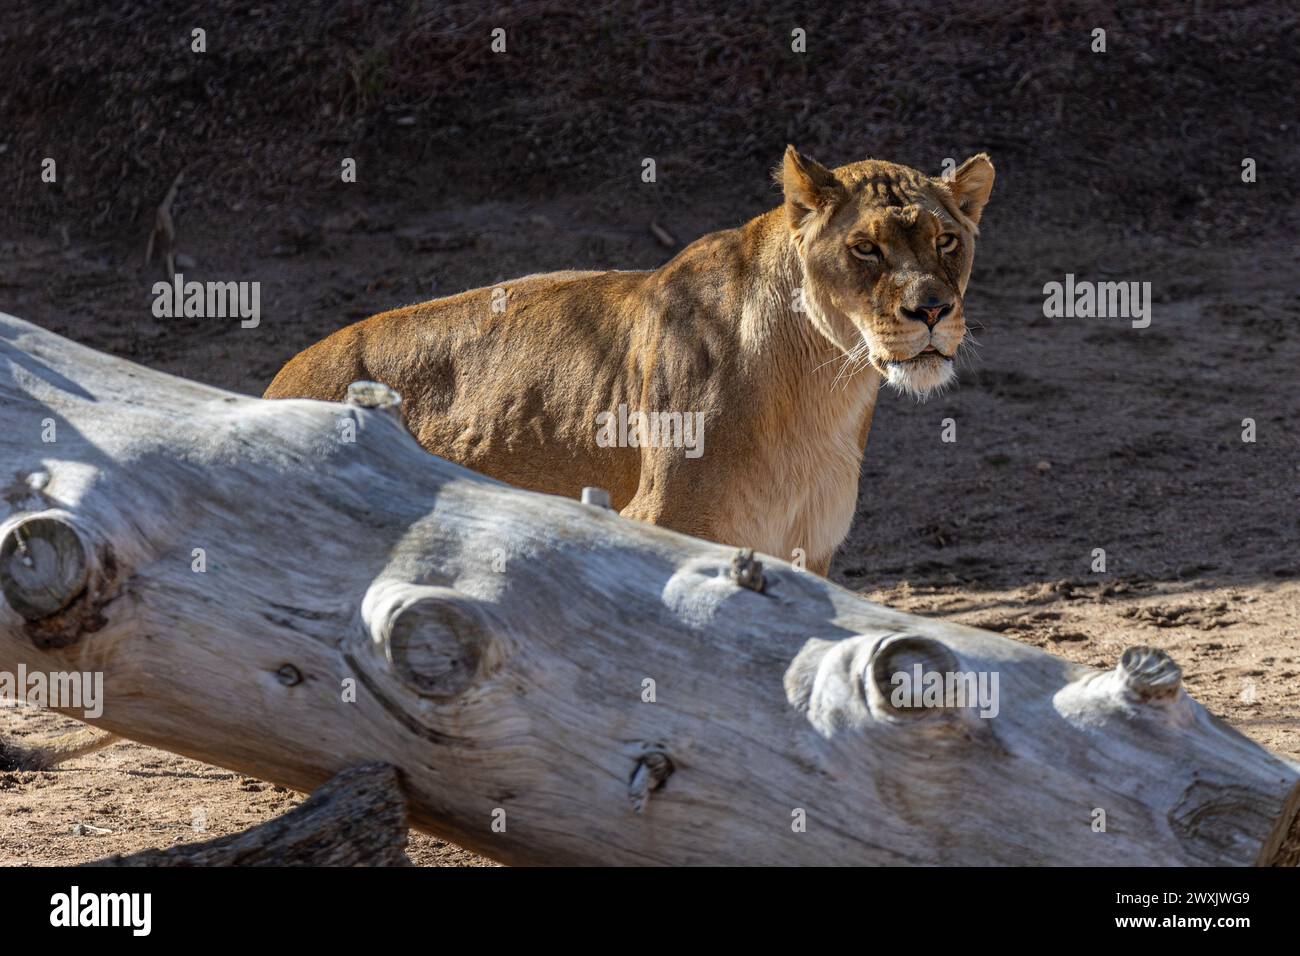 Un gros lion debout près d'une grosse bûche sur le sol Banque D'Images